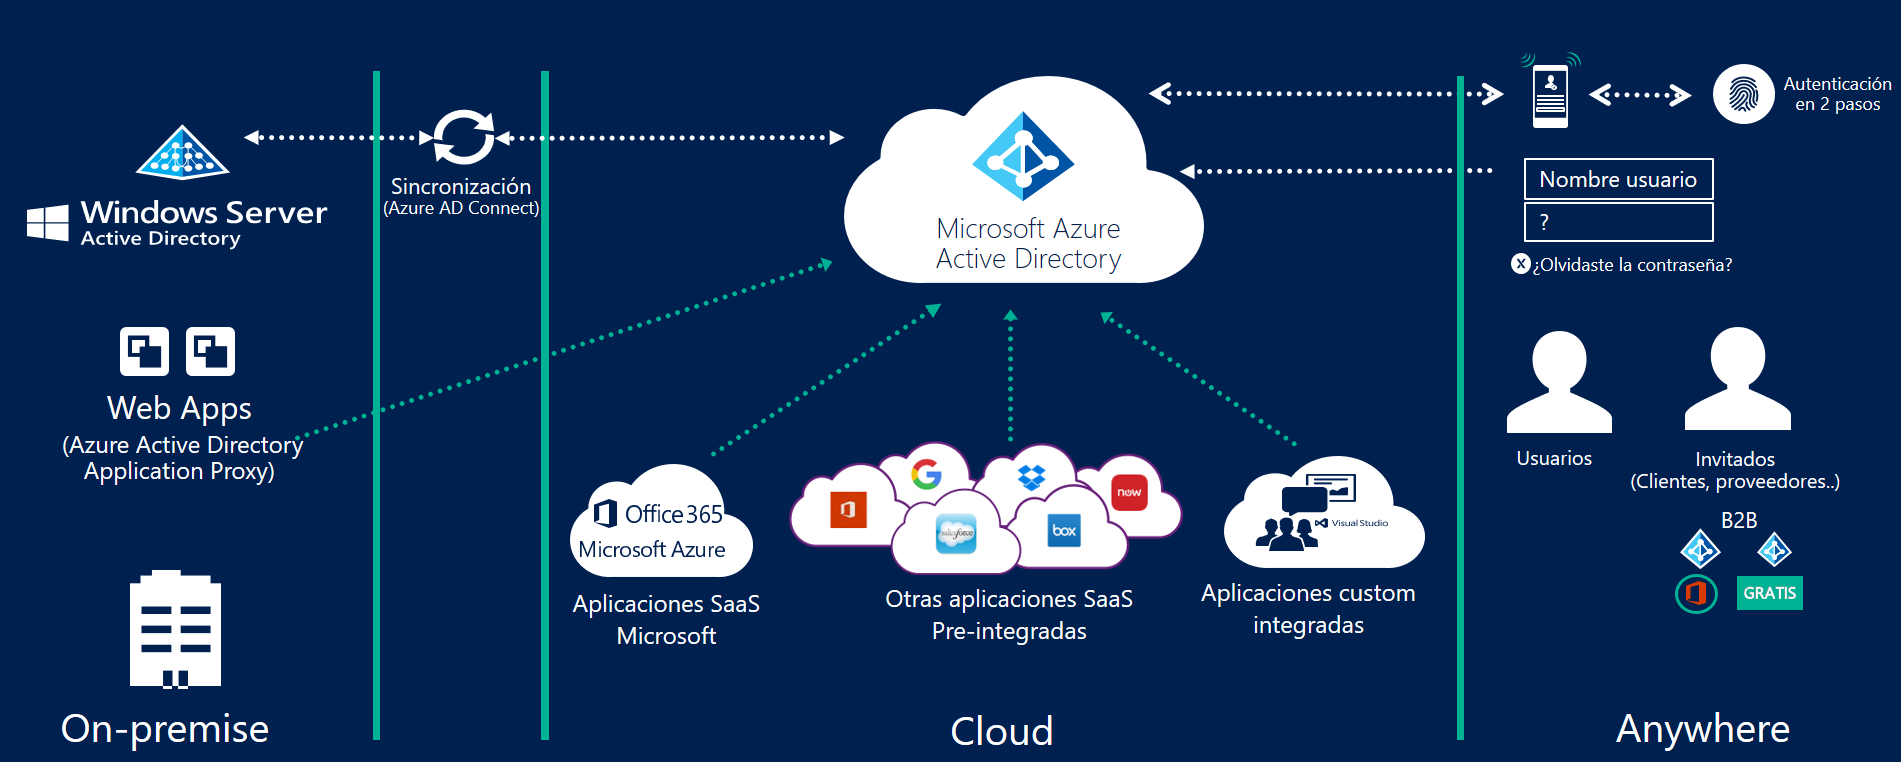 Qué es Microsoft Azure Active Directory